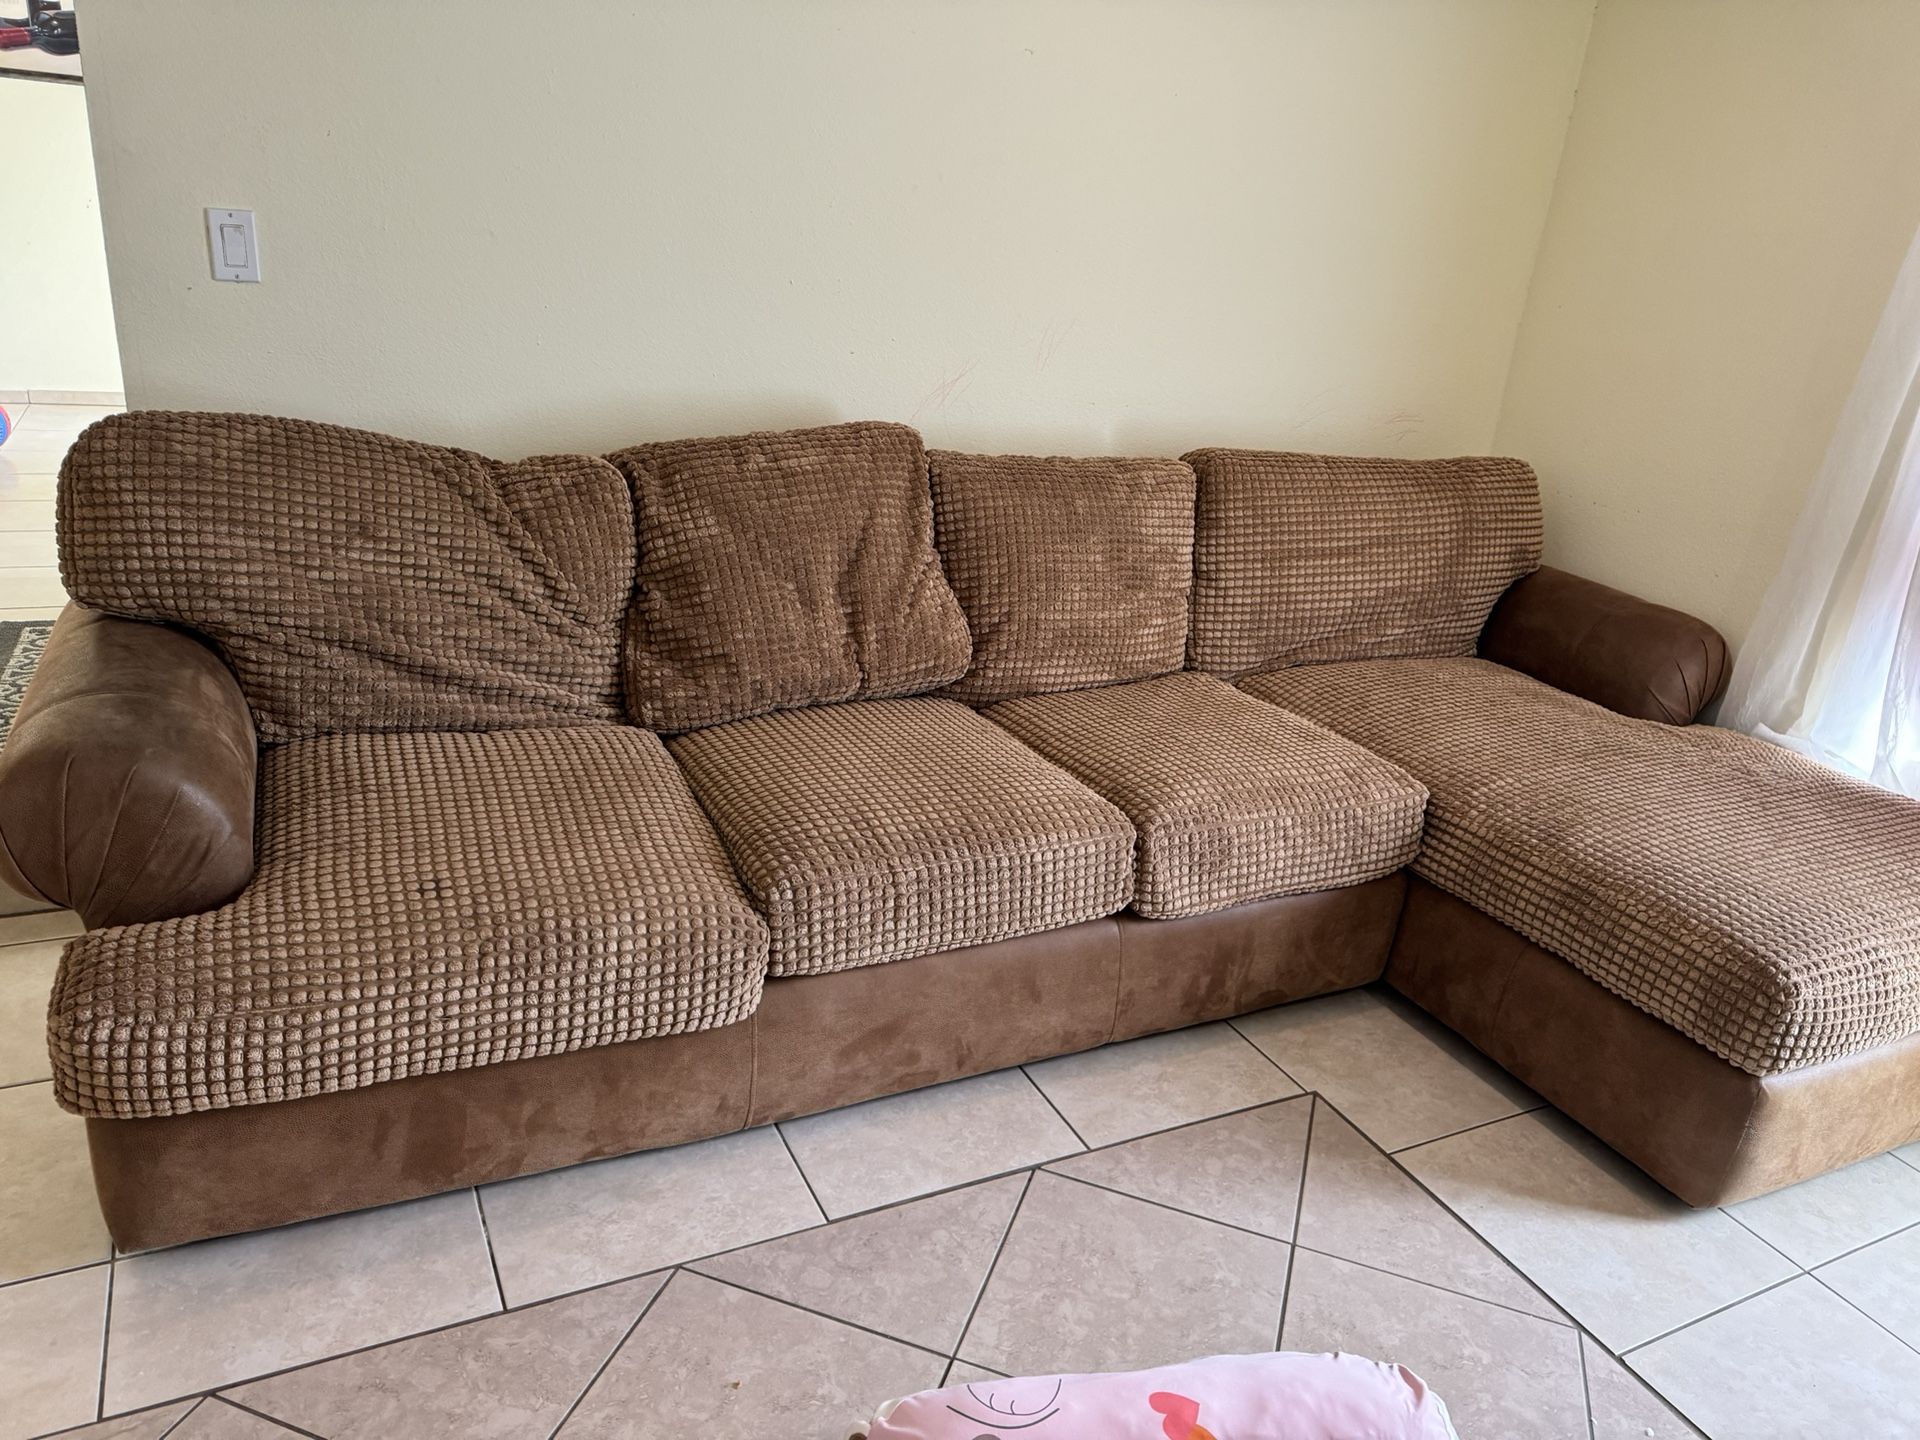 Sofa $150